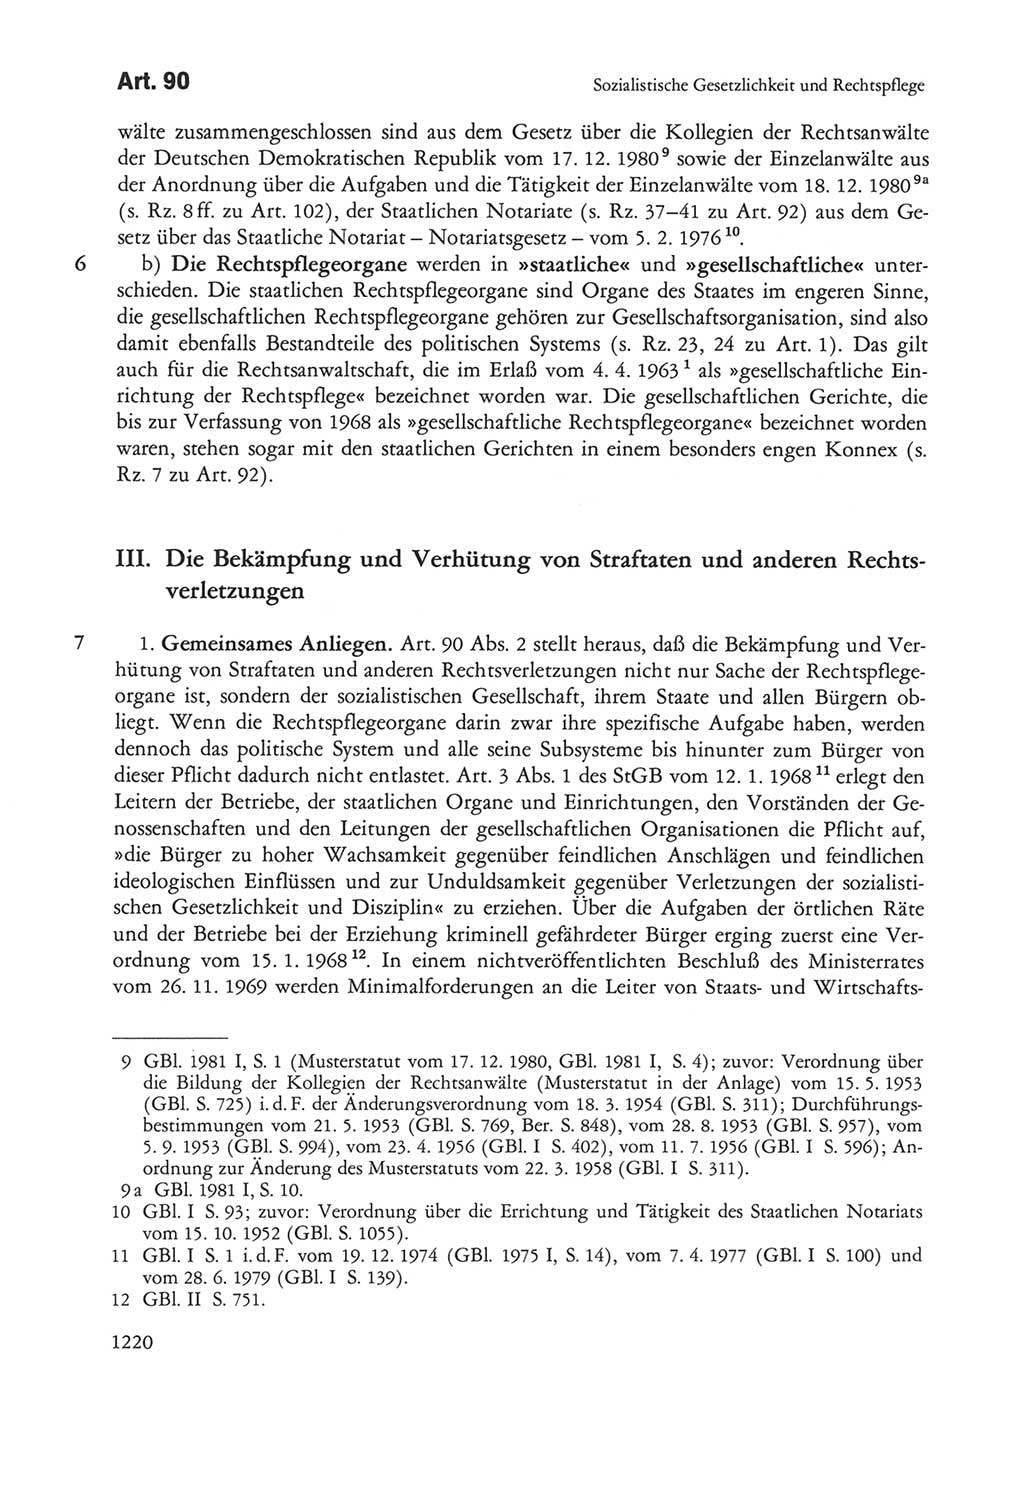 Die sozialistische Verfassung der Deutschen Demokratischen Republik (DDR), Kommentar 1982, Seite 1220 (Soz. Verf. DDR Komm. 1982, S. 1220)